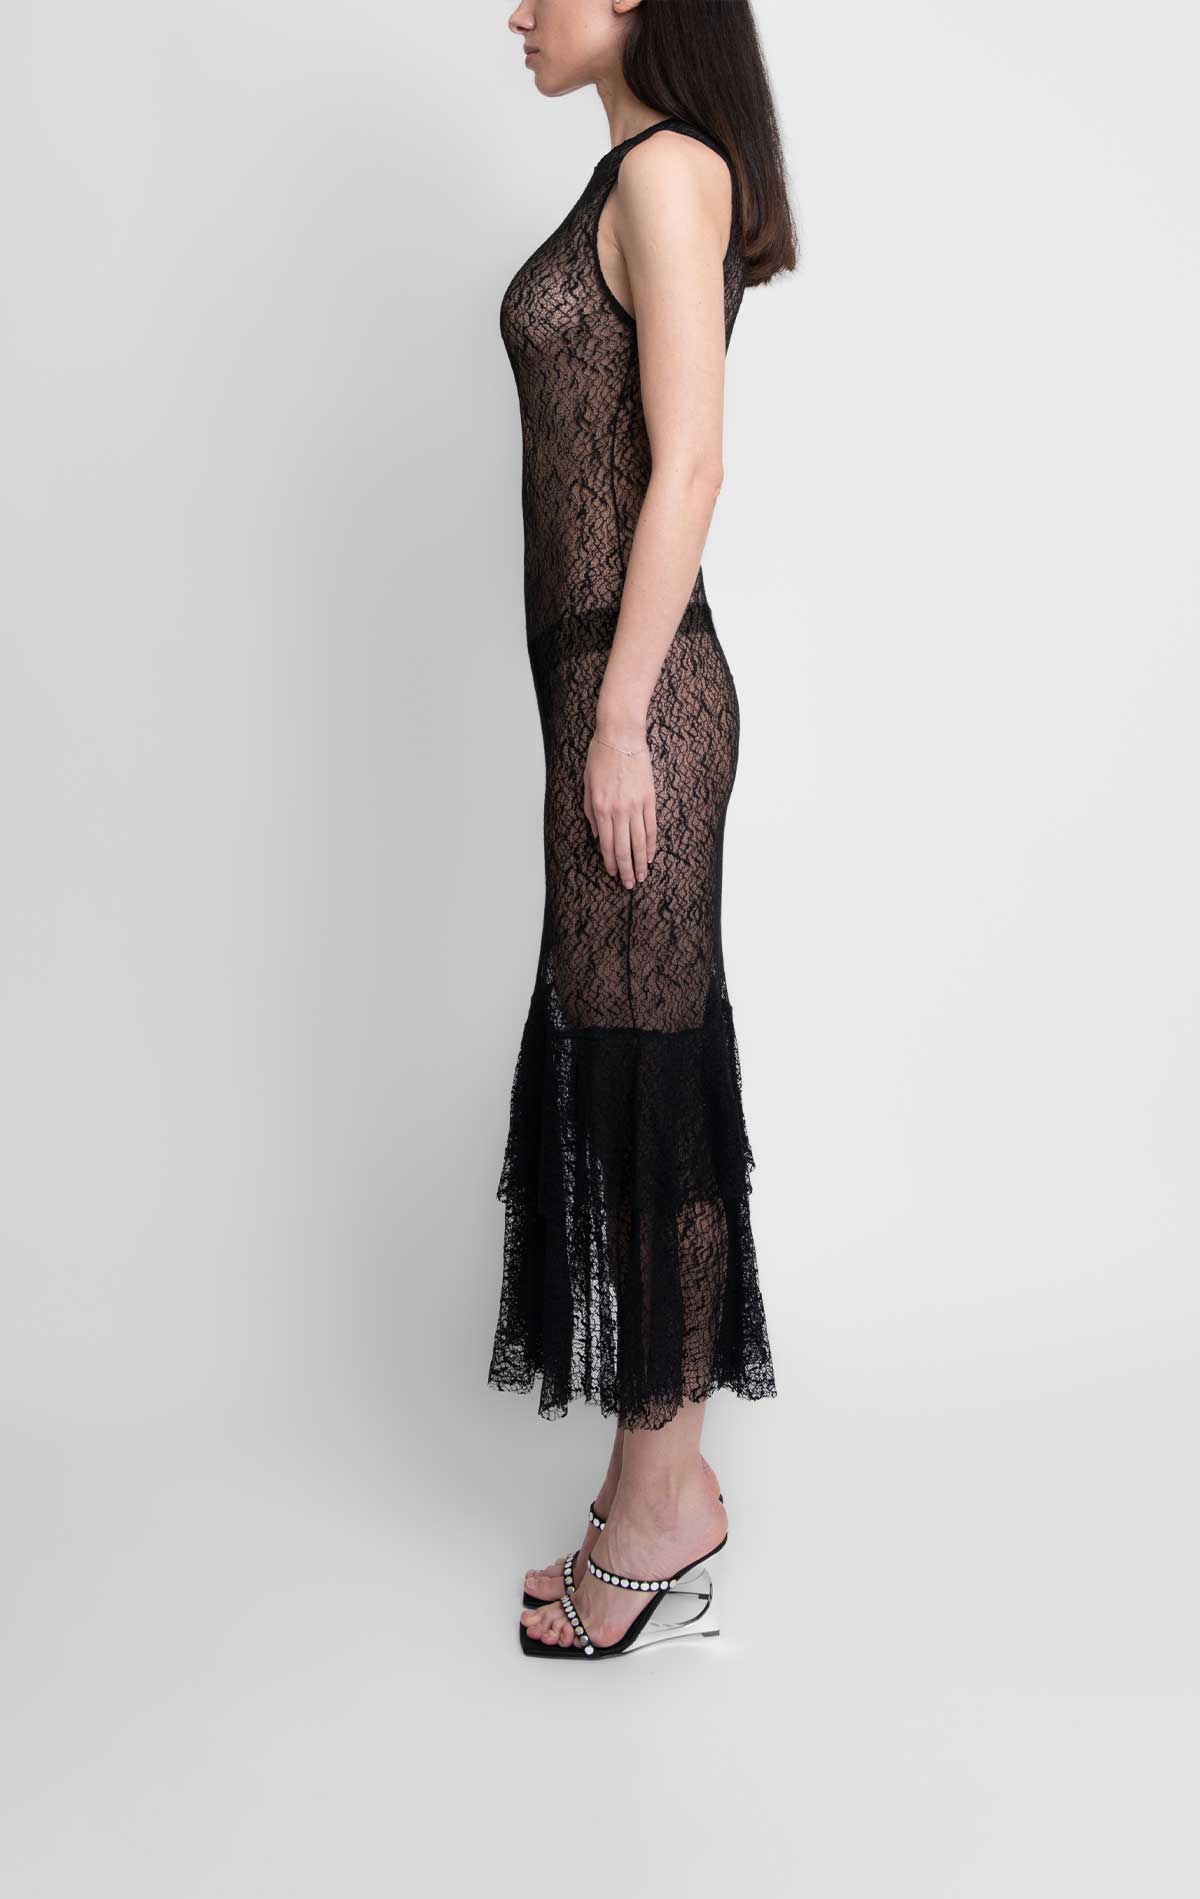 Tish Dress Black Lace - Silvia Astore